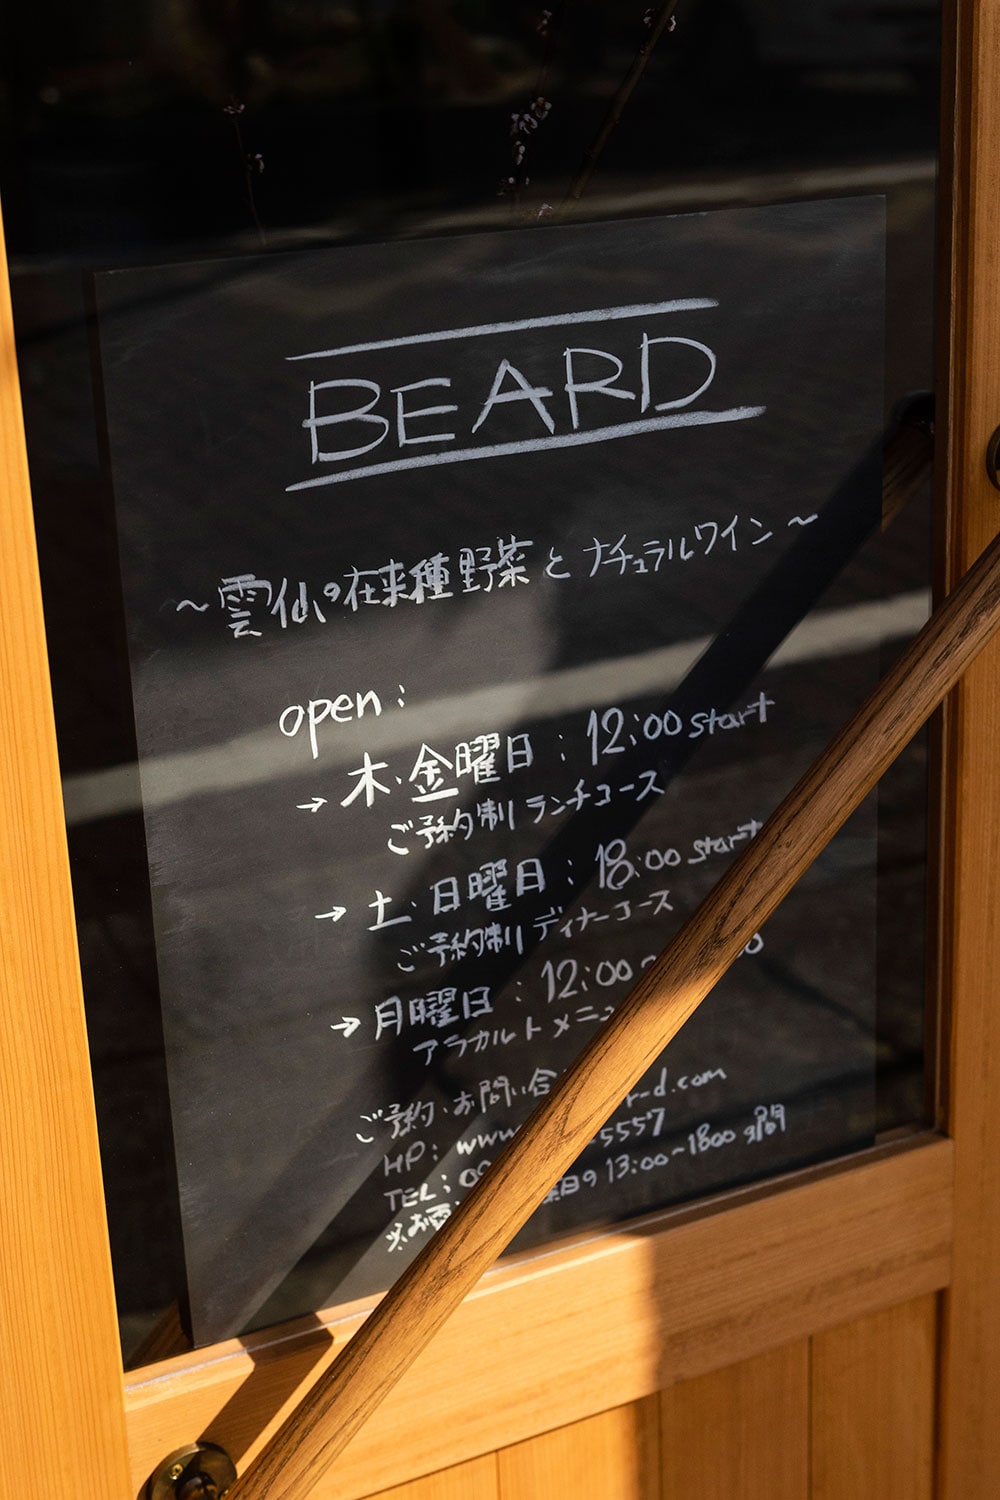 2012年に独立して東京・目黒に立ち上げたビストロが「BEARD」。「次なる展開として、この店を見て地方でやるのも面白いと、東京のシェフたちが思うきっかけになれば嬉しいです」。